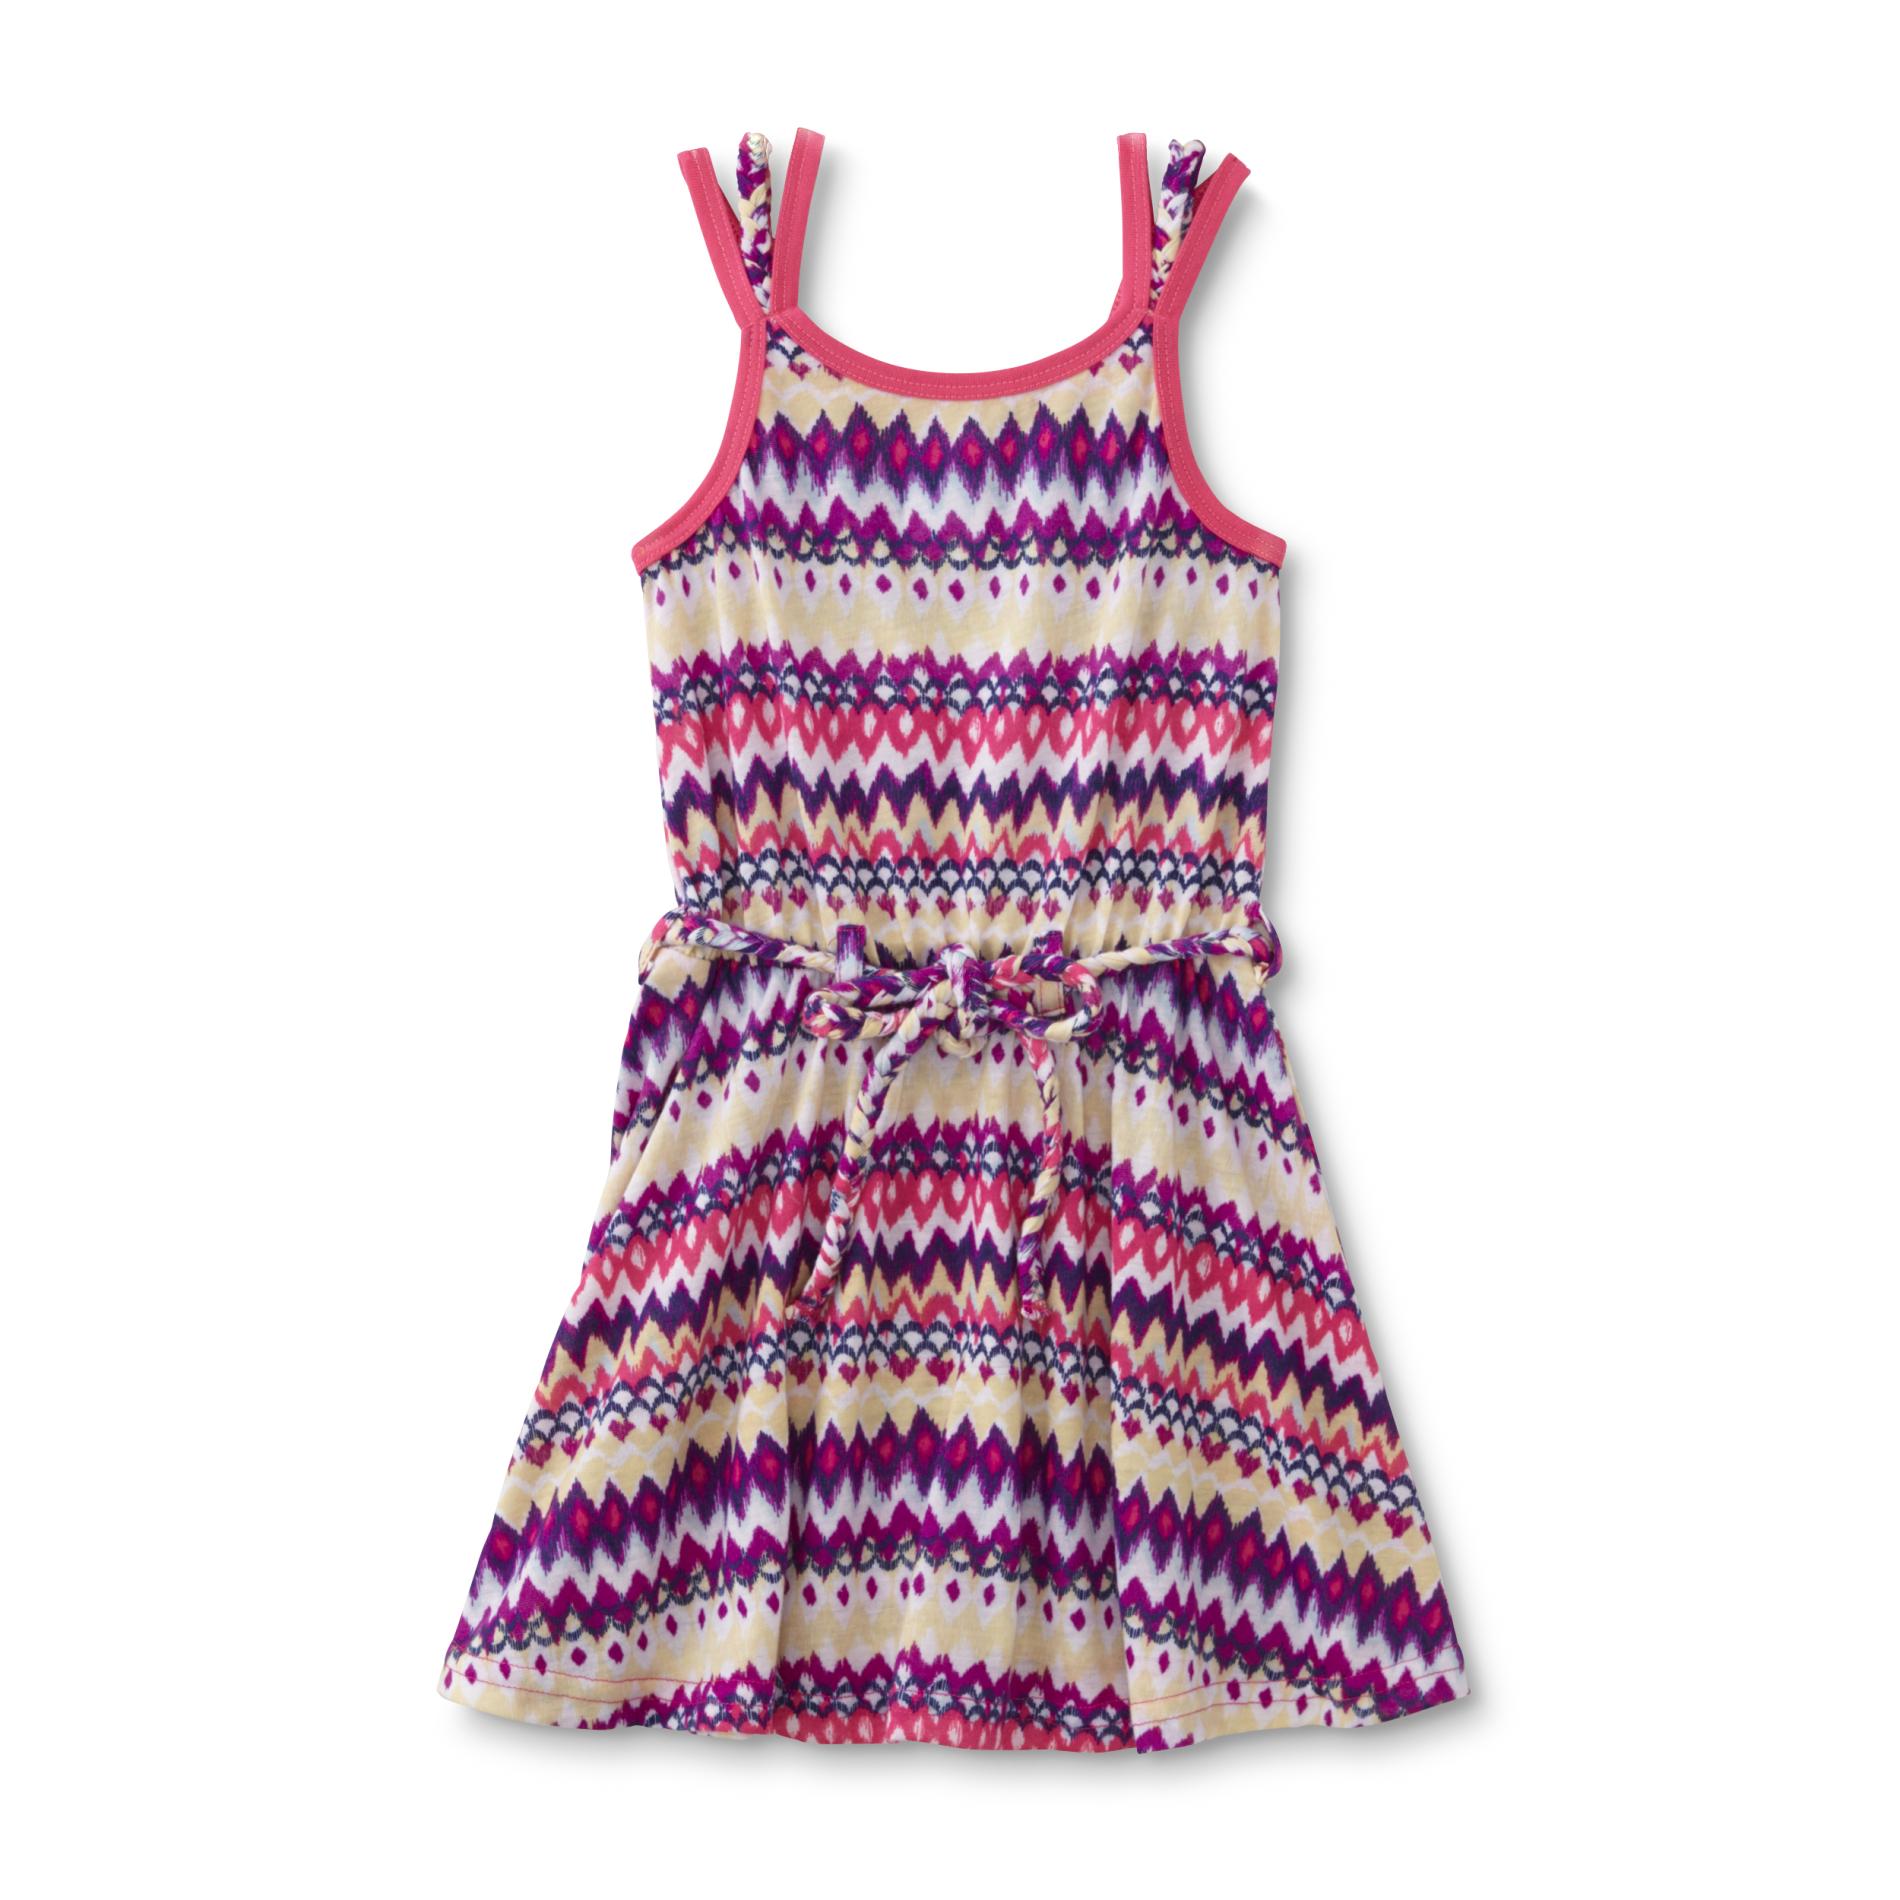 Infant & Toddler Girl's Sleeveless Dress - Chevron & Ikat